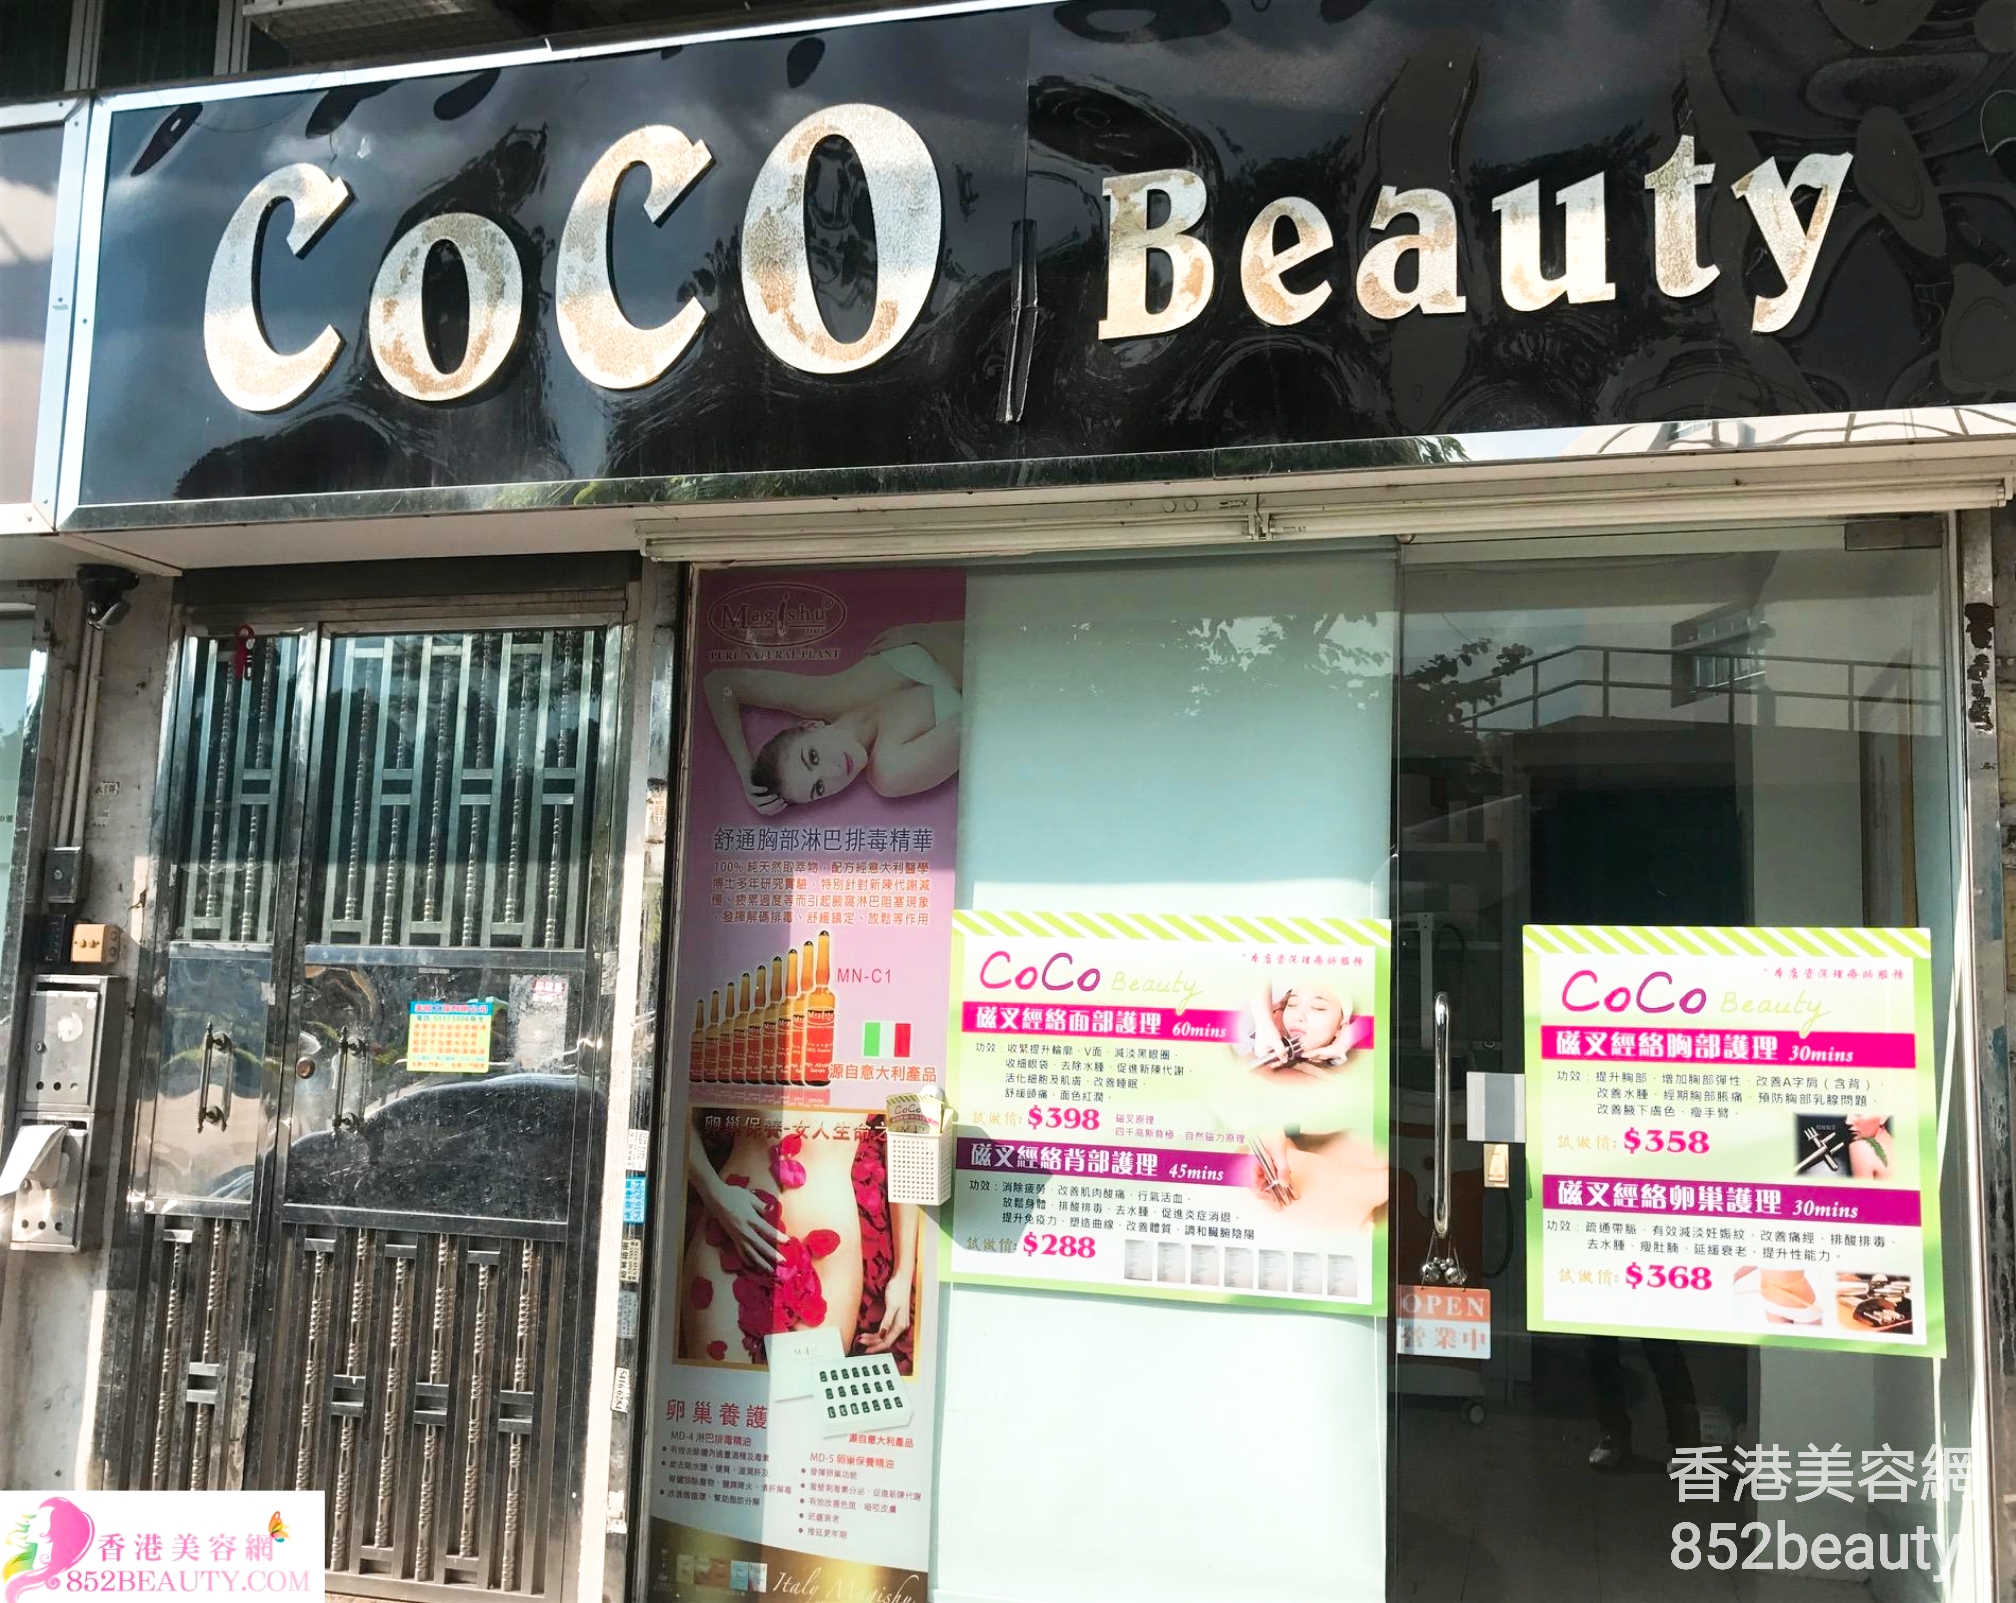 Facial Care: Coco Beauty